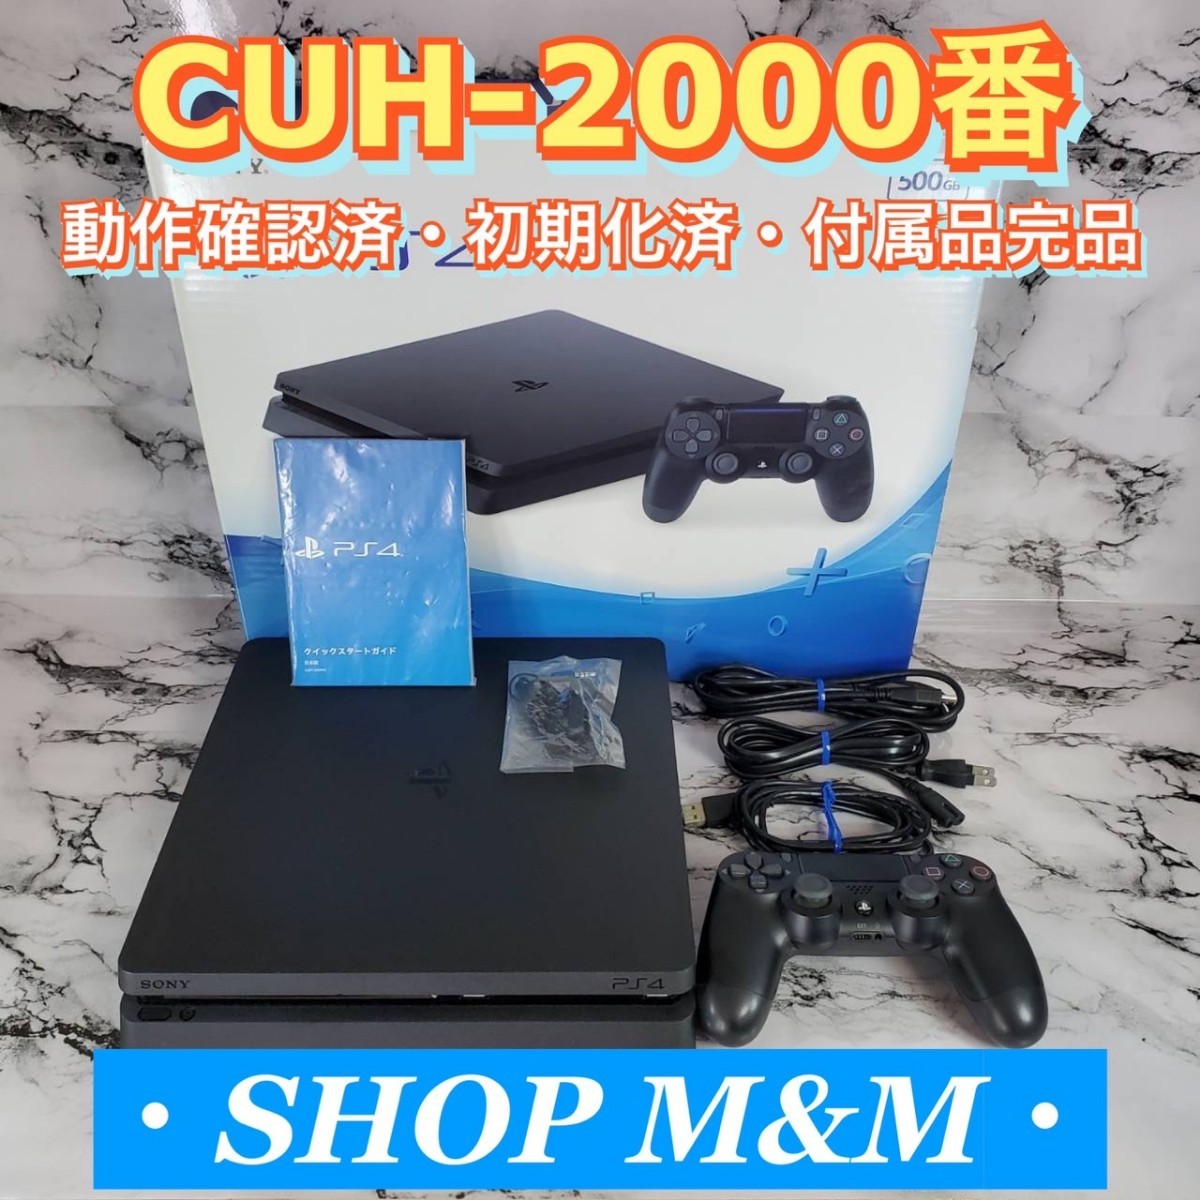 インボイス対応 CUH-2000 動作確認済み PS4 本体 ブラック 封印シール